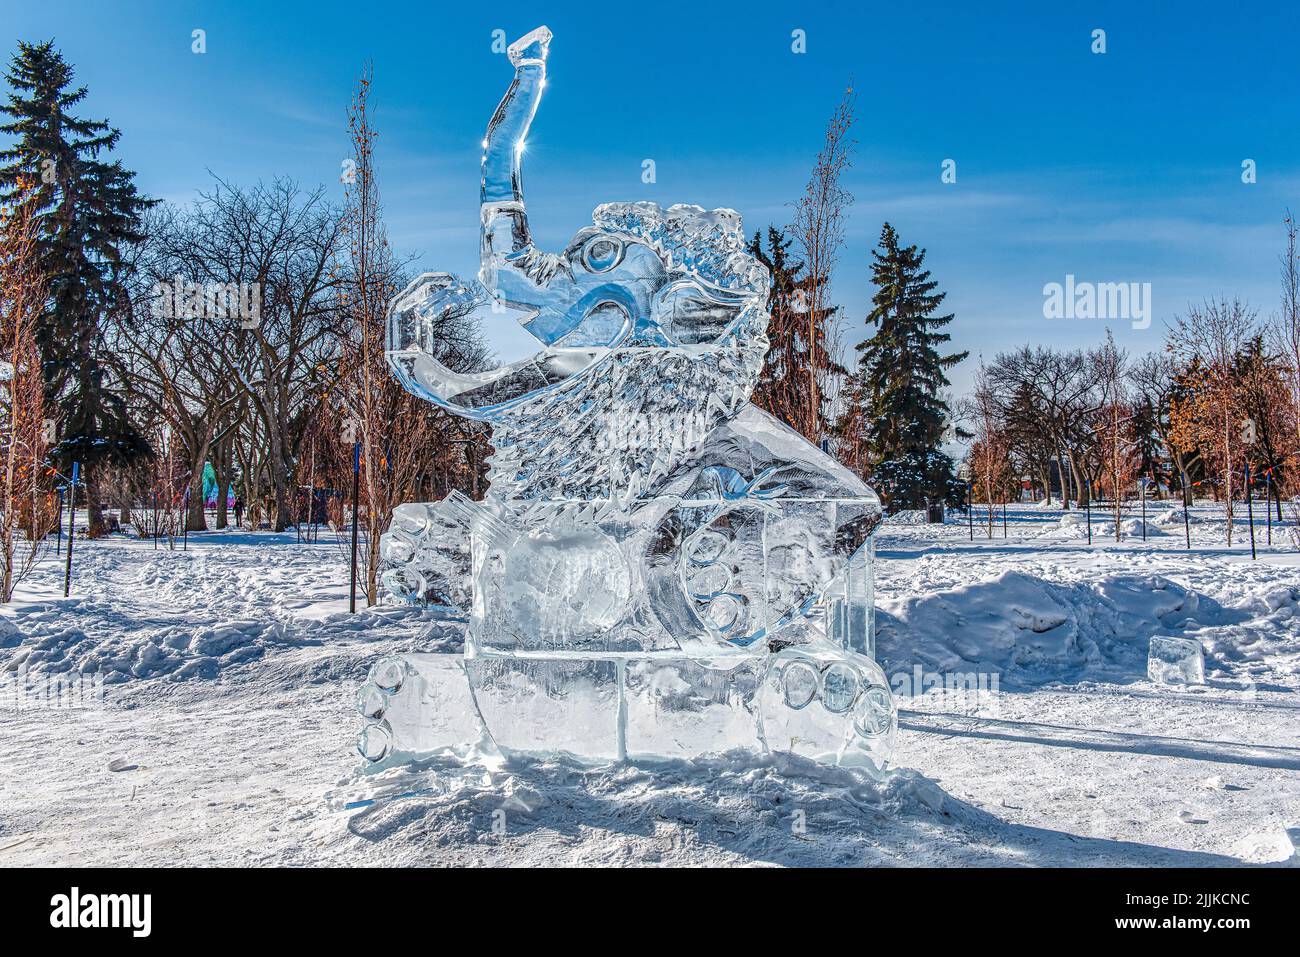 Una scultura di ghiaccio di un elefante, scolpito da grandi blocchi di ghiaccio, nella neve in una giornata di sole. Canada Foto Stock